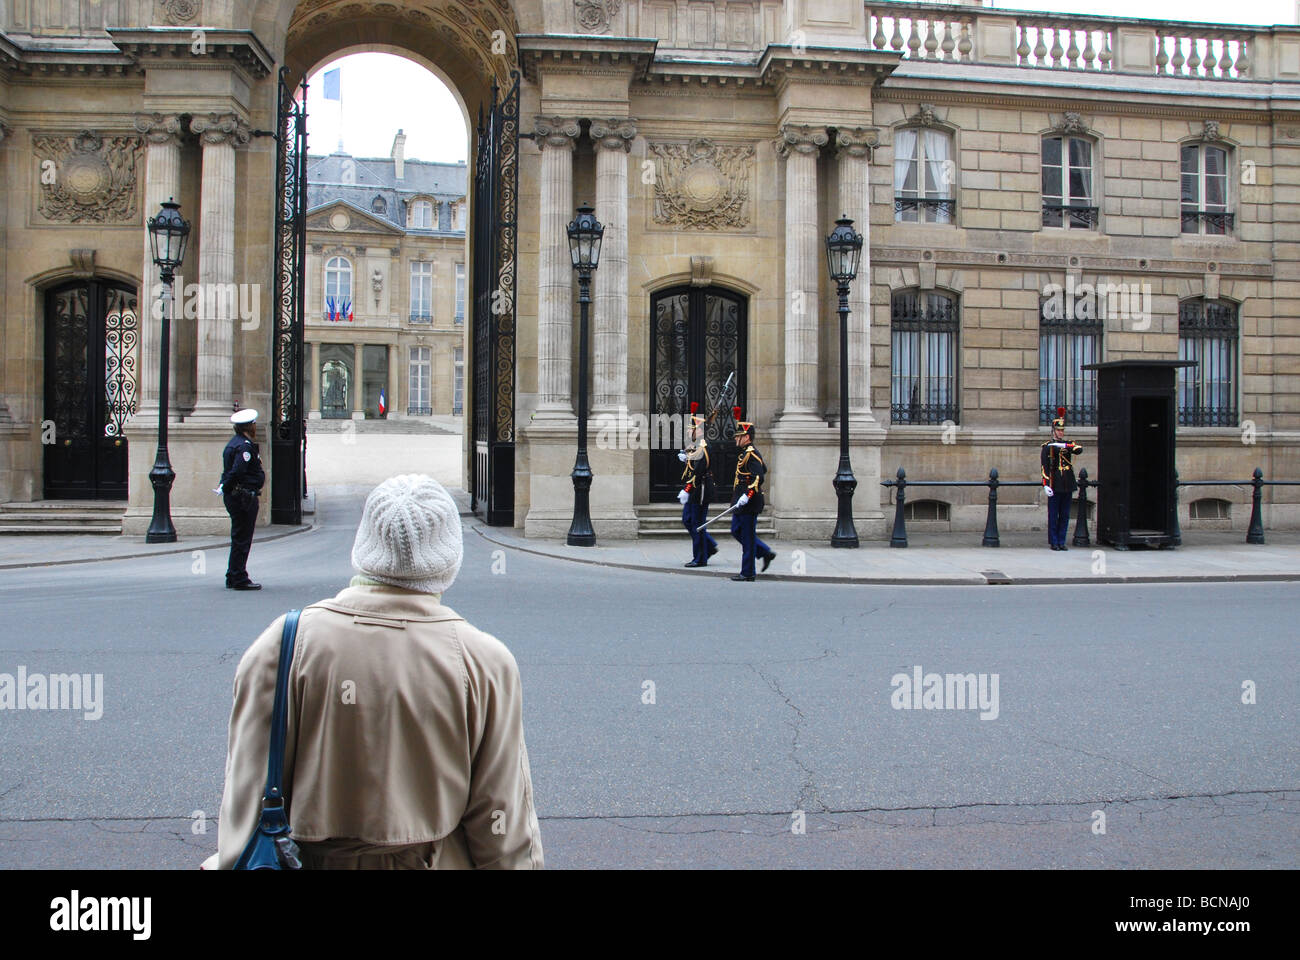 Elysee-Palast, die offizielle Residenz des Präsidenten der französischen Republik, Paris Frankreich Stockfoto